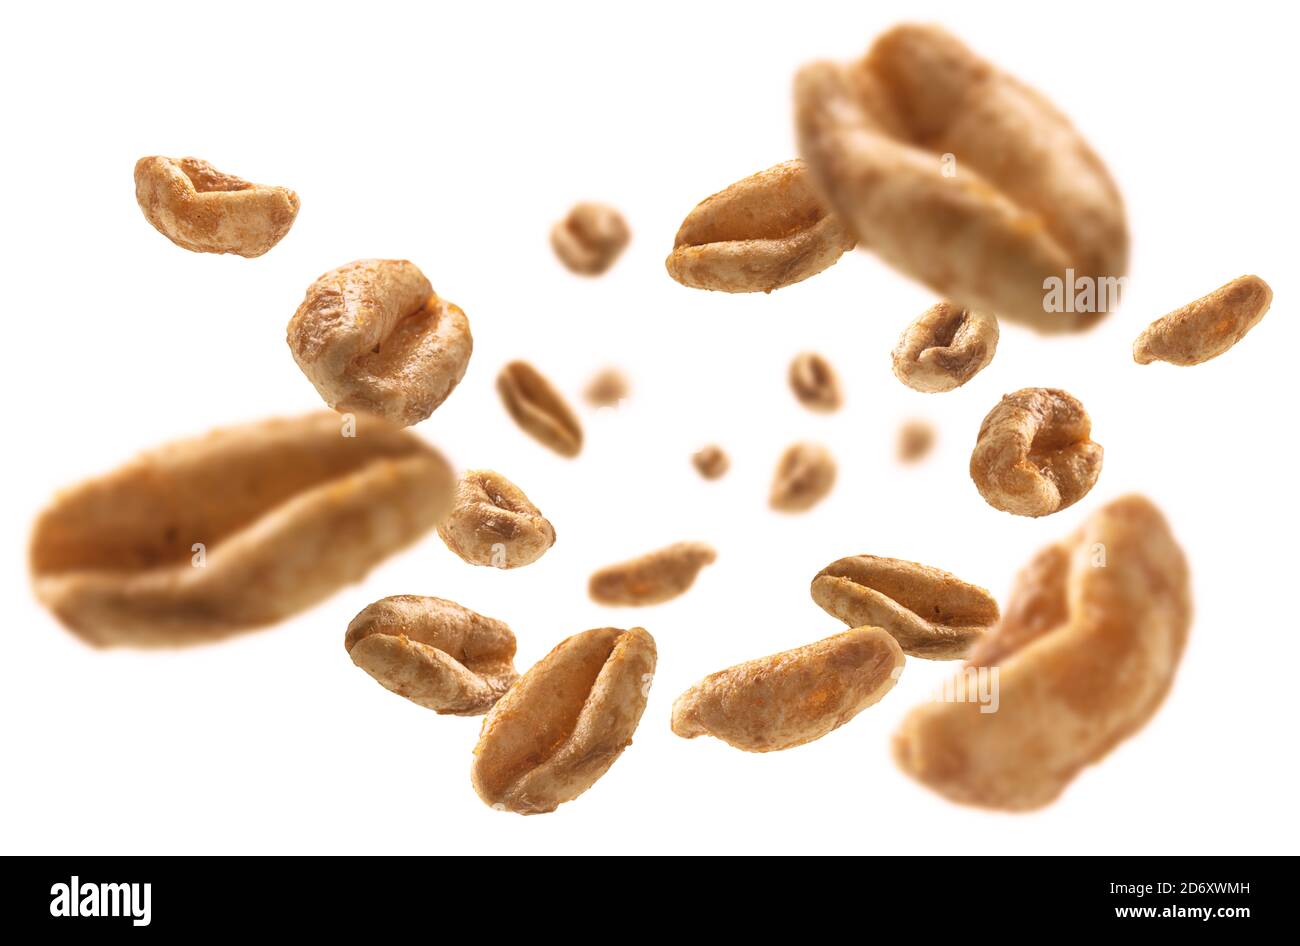 Aerial wheat levitates on a white background Stock Photo